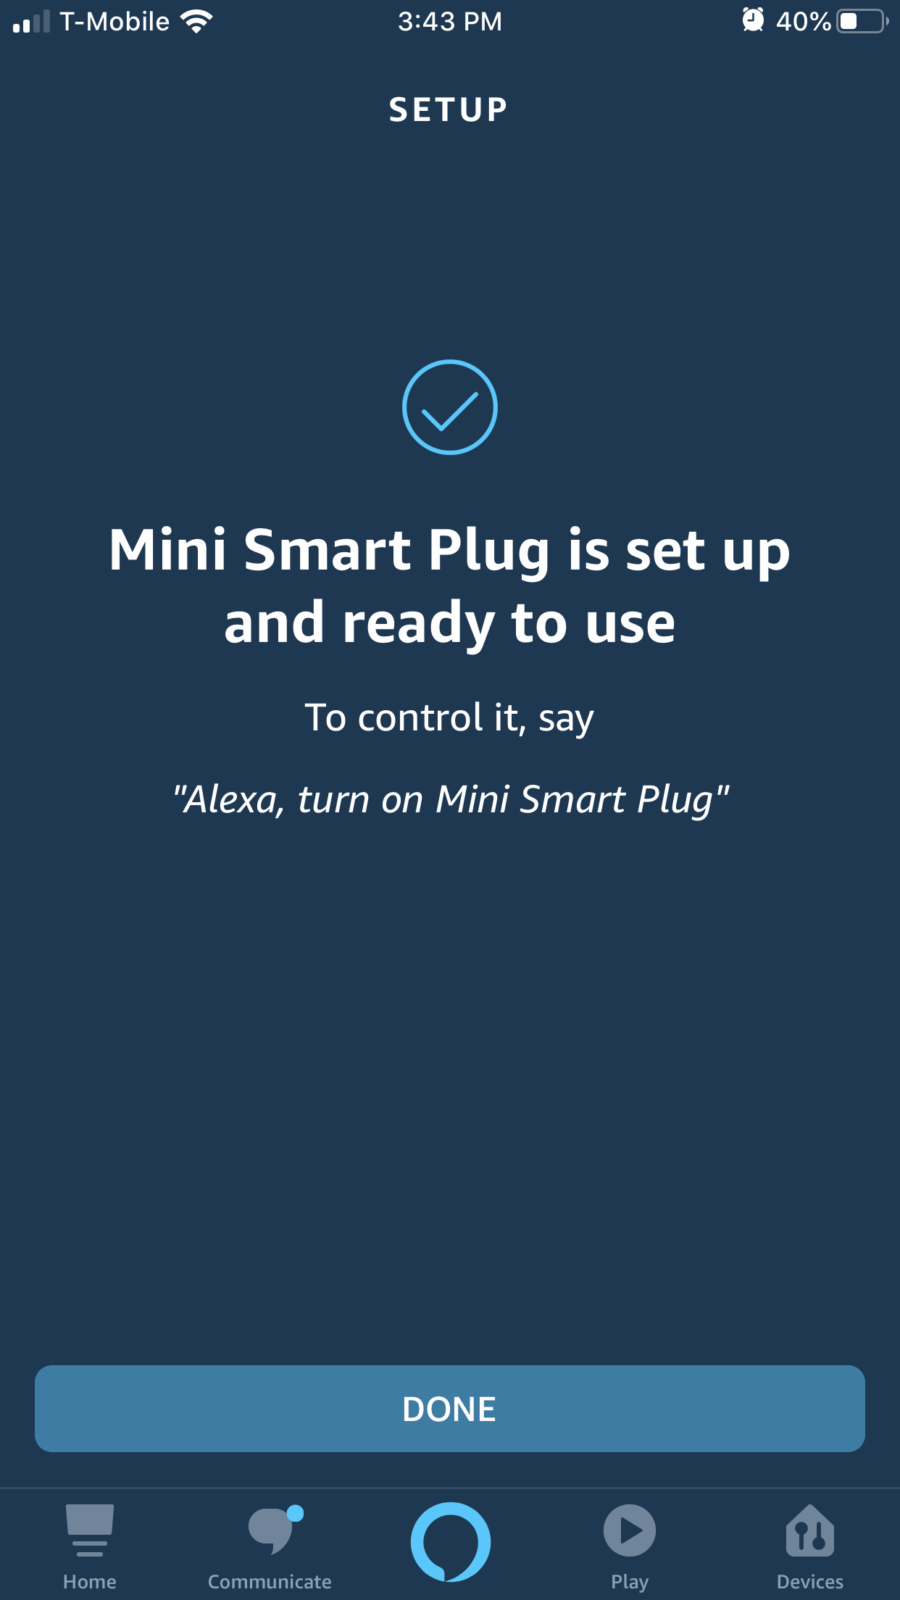 Generic Smart Plug EIGHTREE, Alexa Smart Plugs That Work with